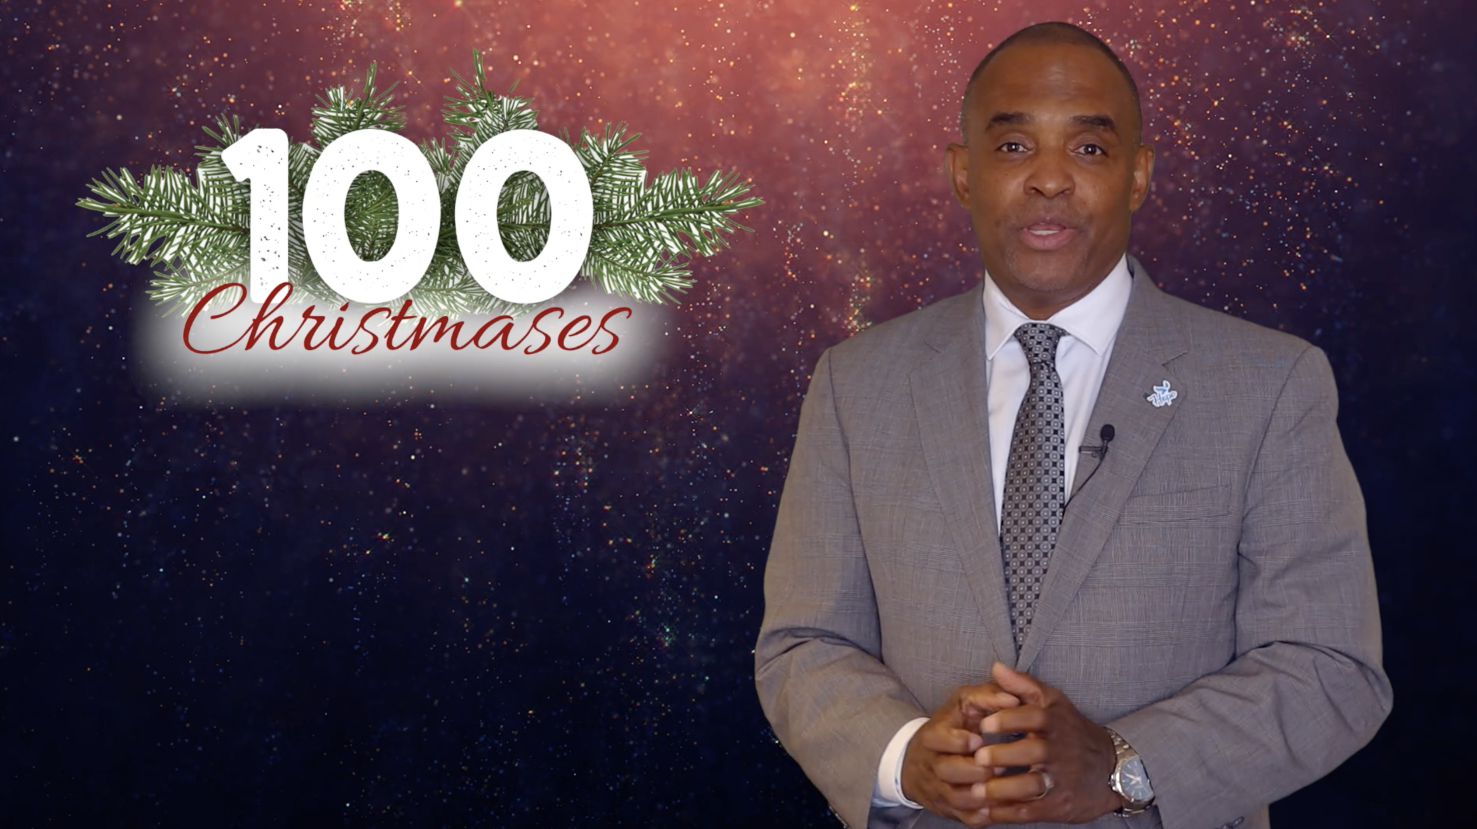 100 Christmases